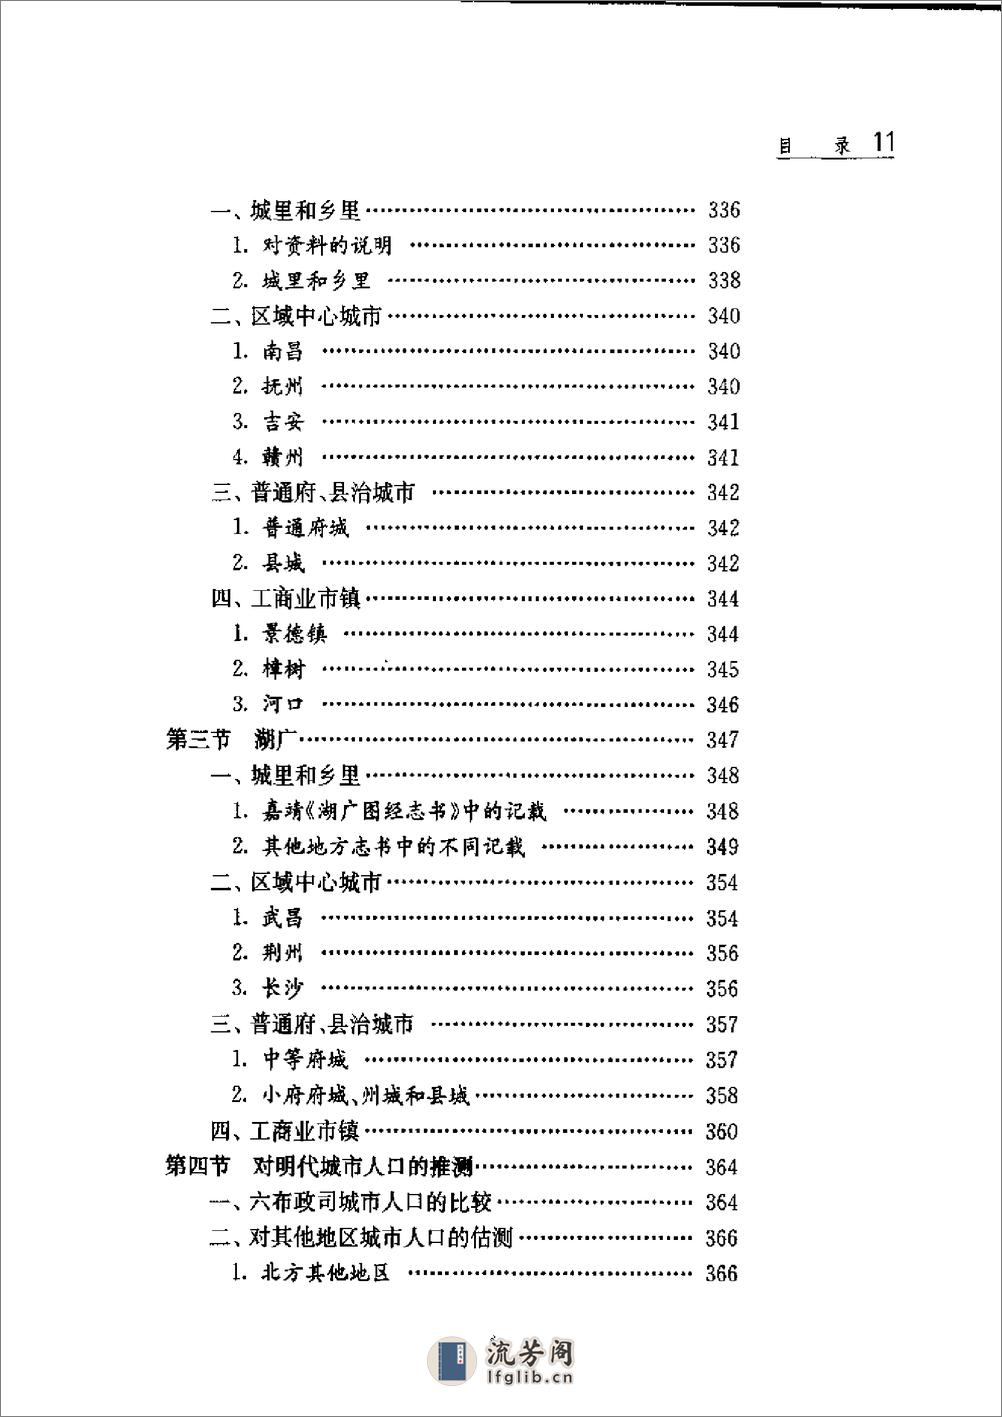 中国人口史 第4卷 明时期 - 第16页预览图